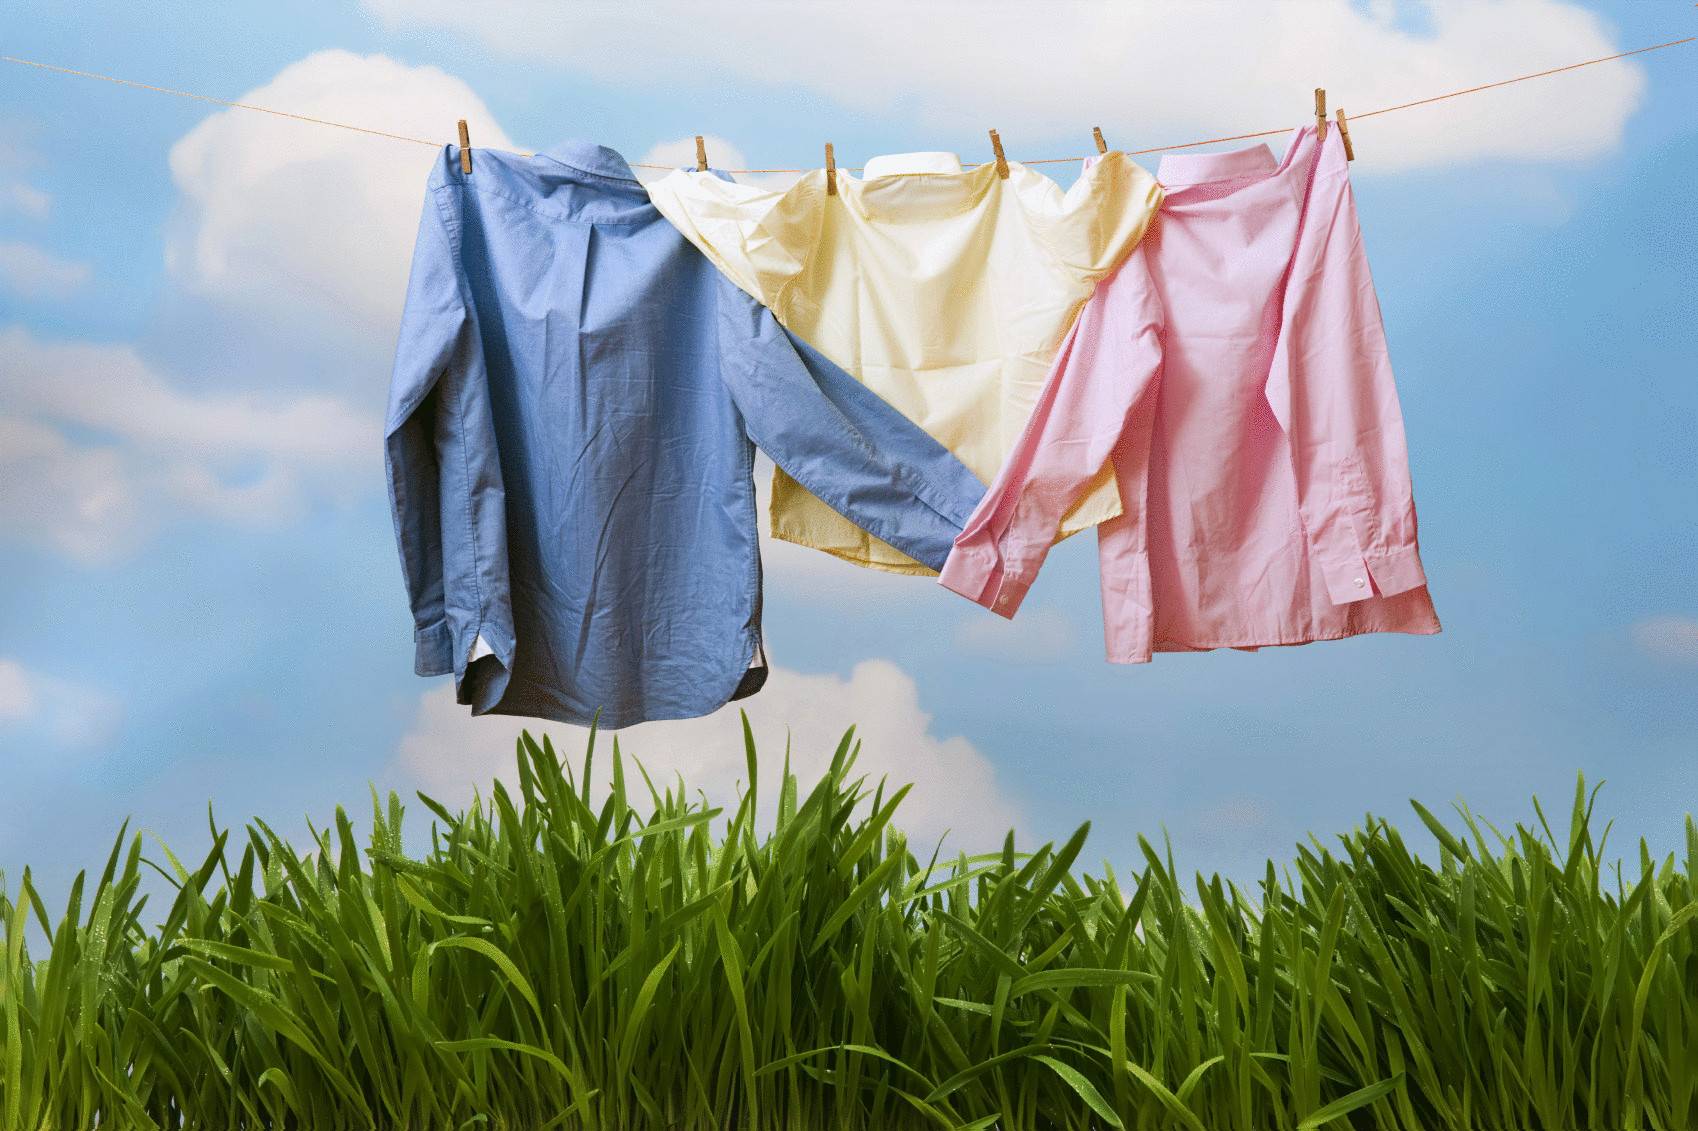 10 рекомендаций, которые помогут сохранить одежду новой